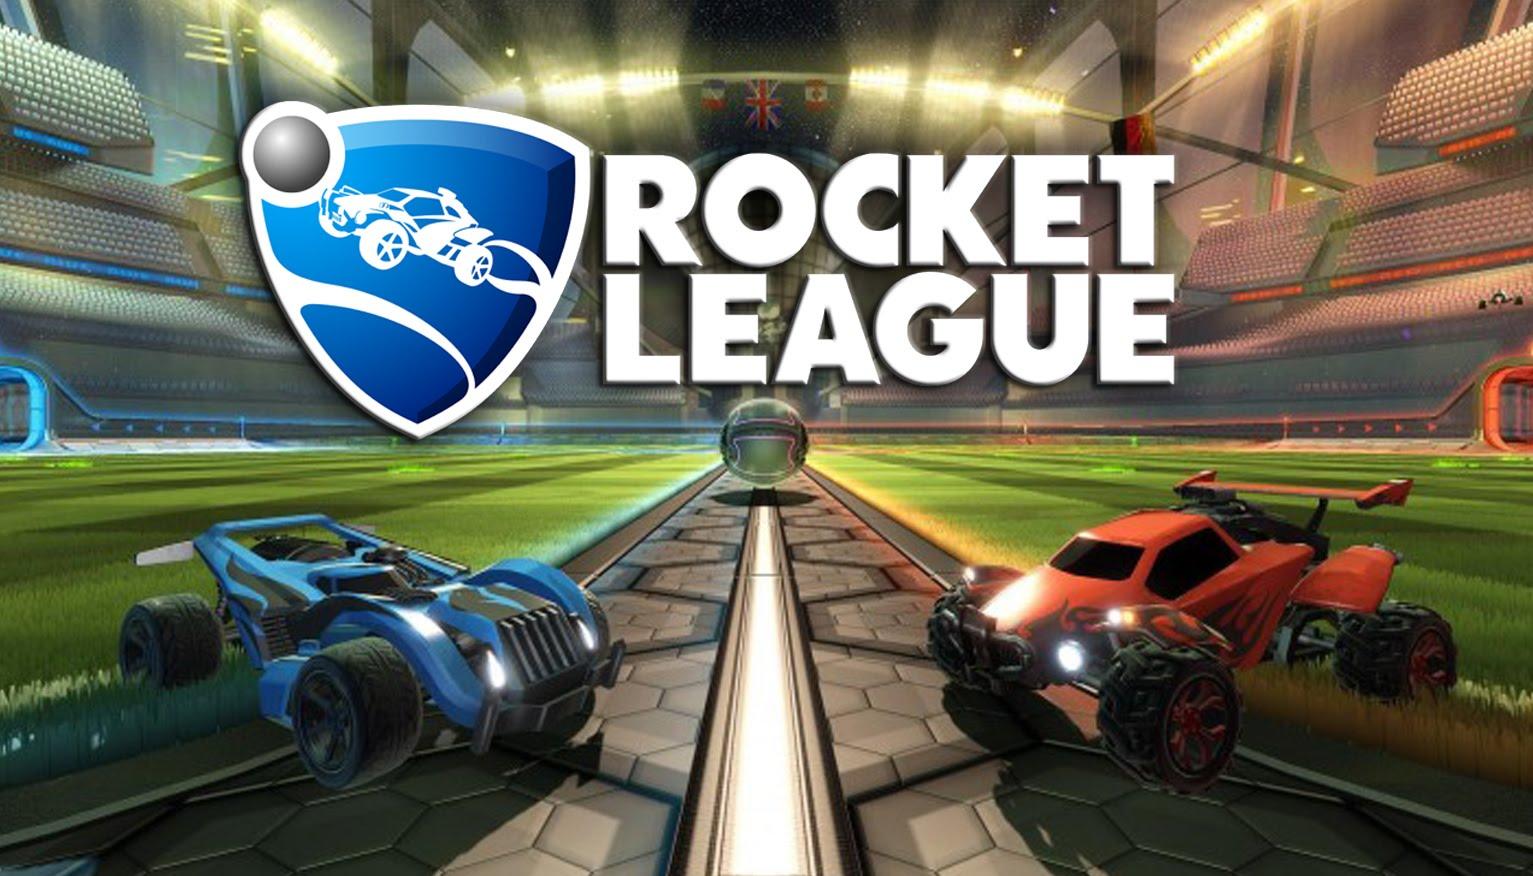 Epic games rocket league. Игра Rocket League. Рокет лига обложка. Rocket League картинки. Rocket League игрушки.